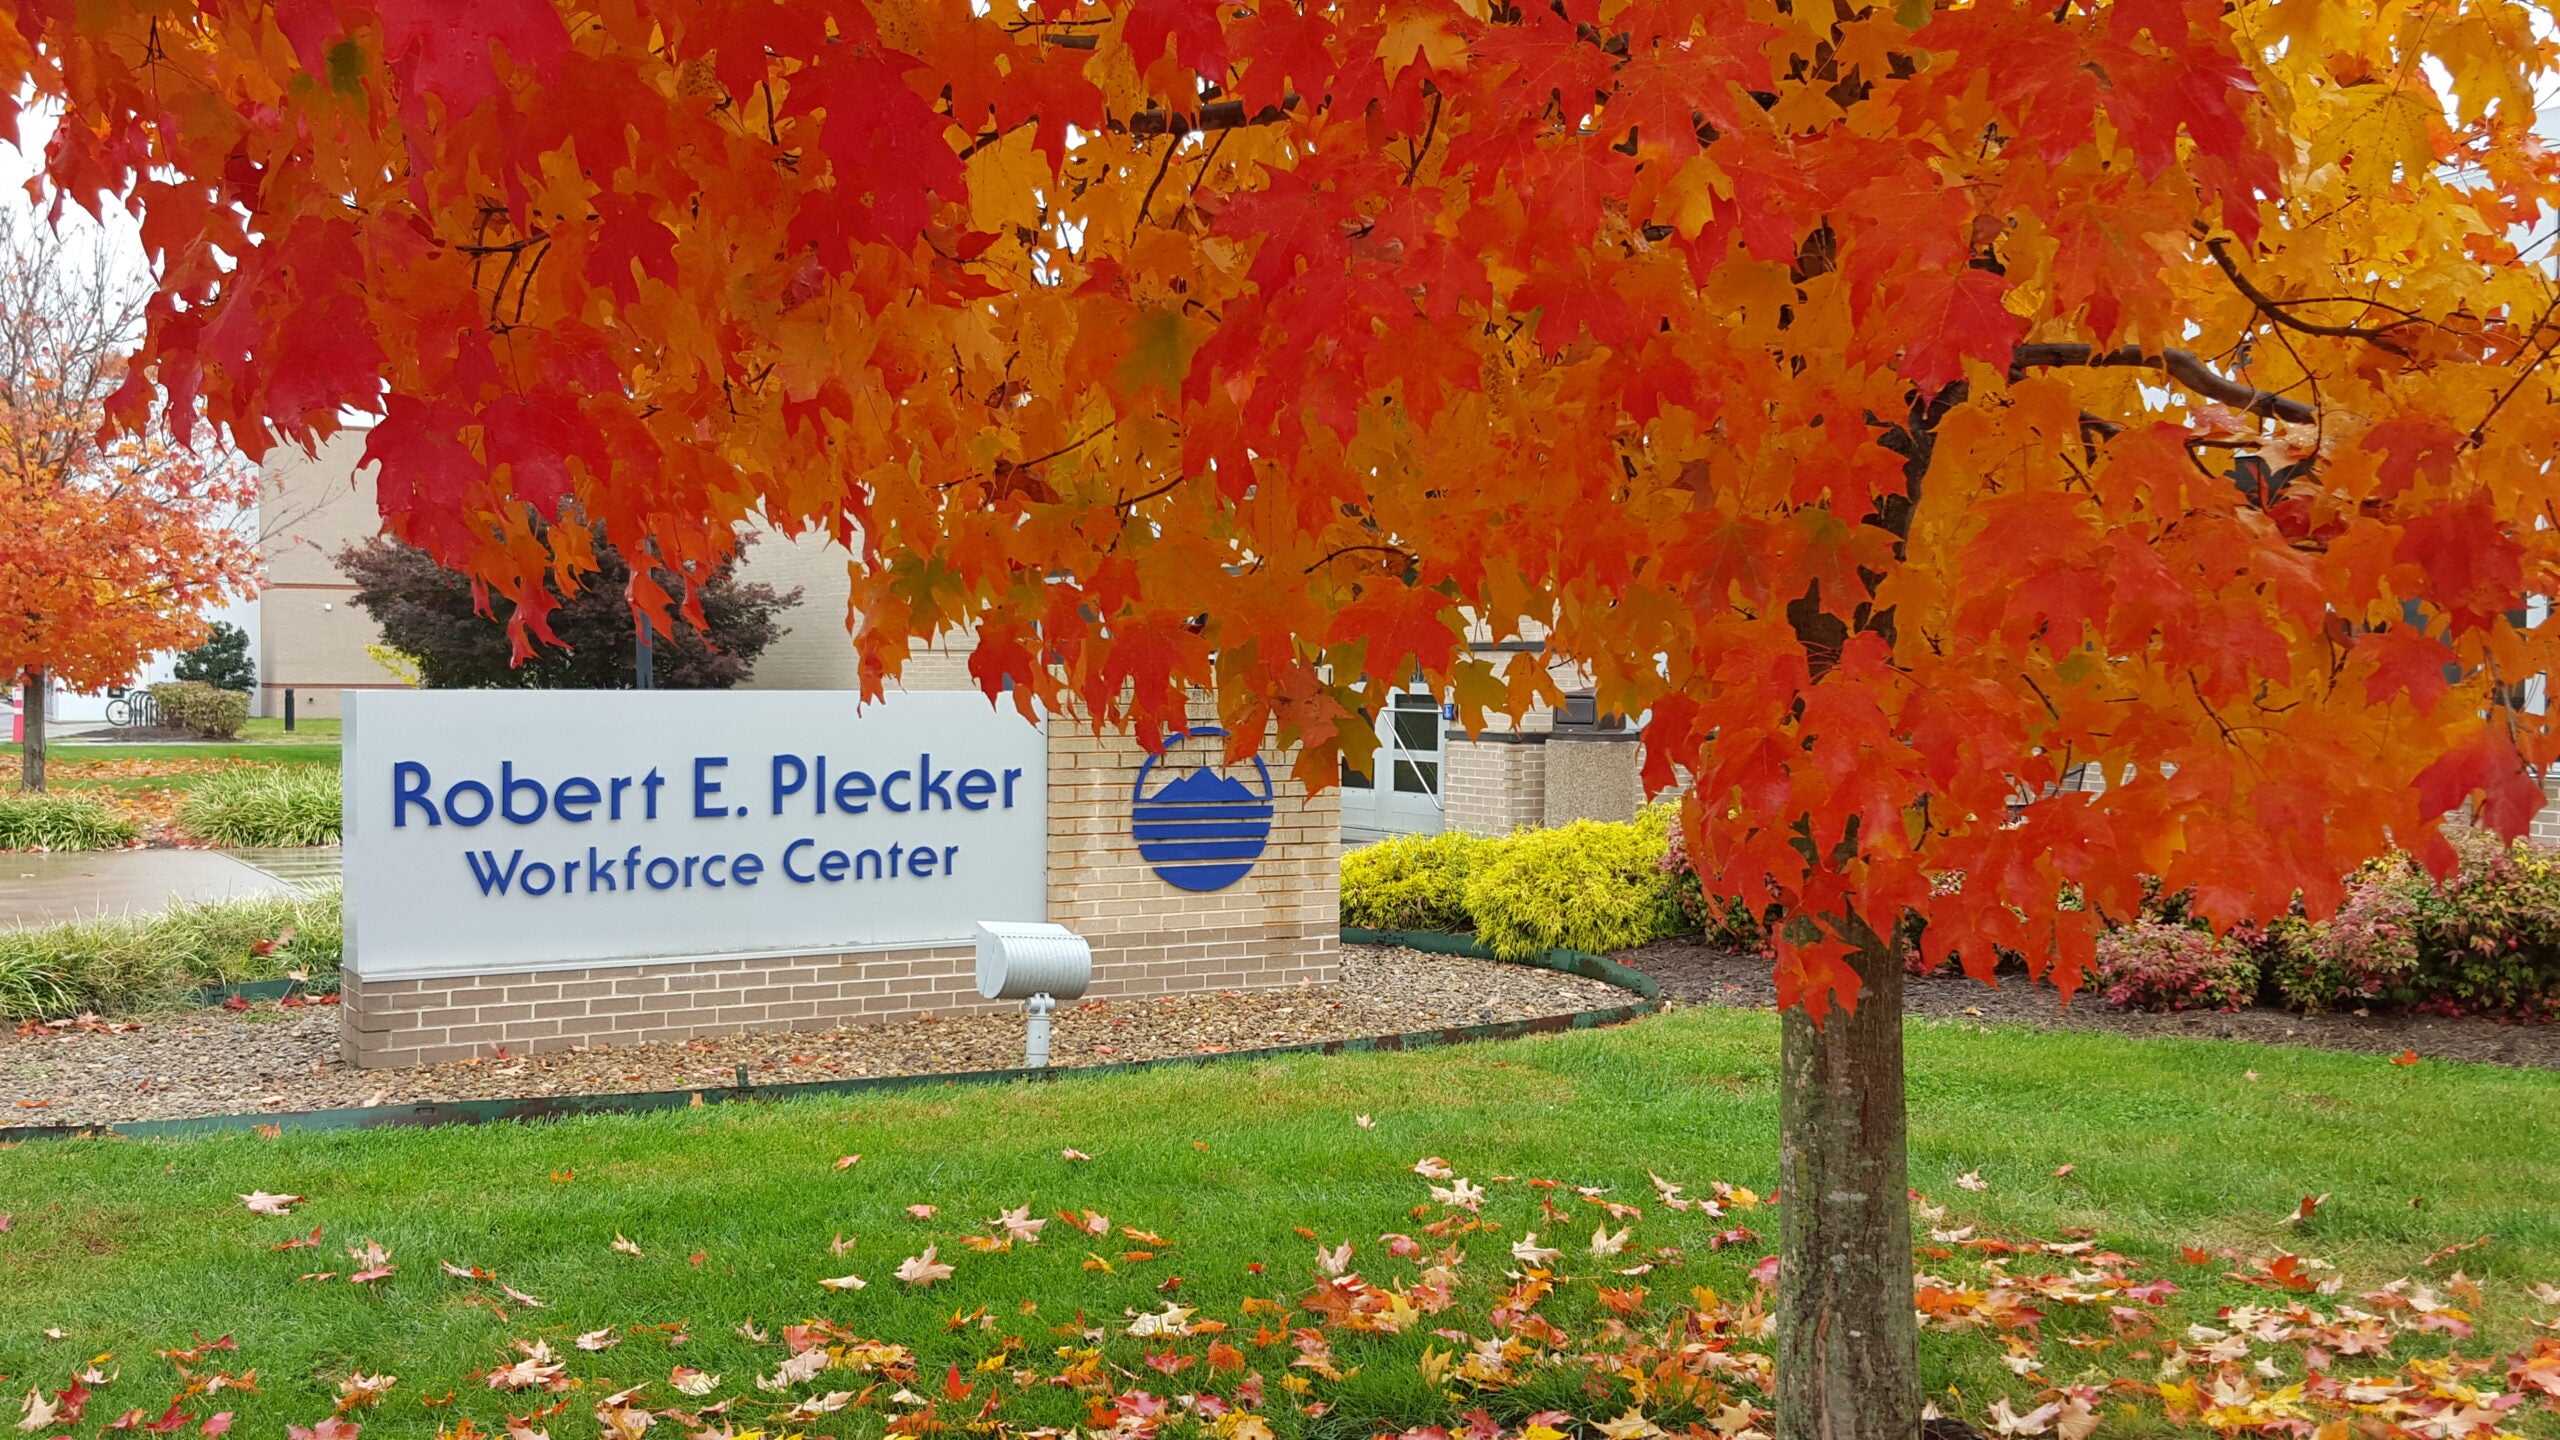 Robert E. Plecker Workforce Center sign